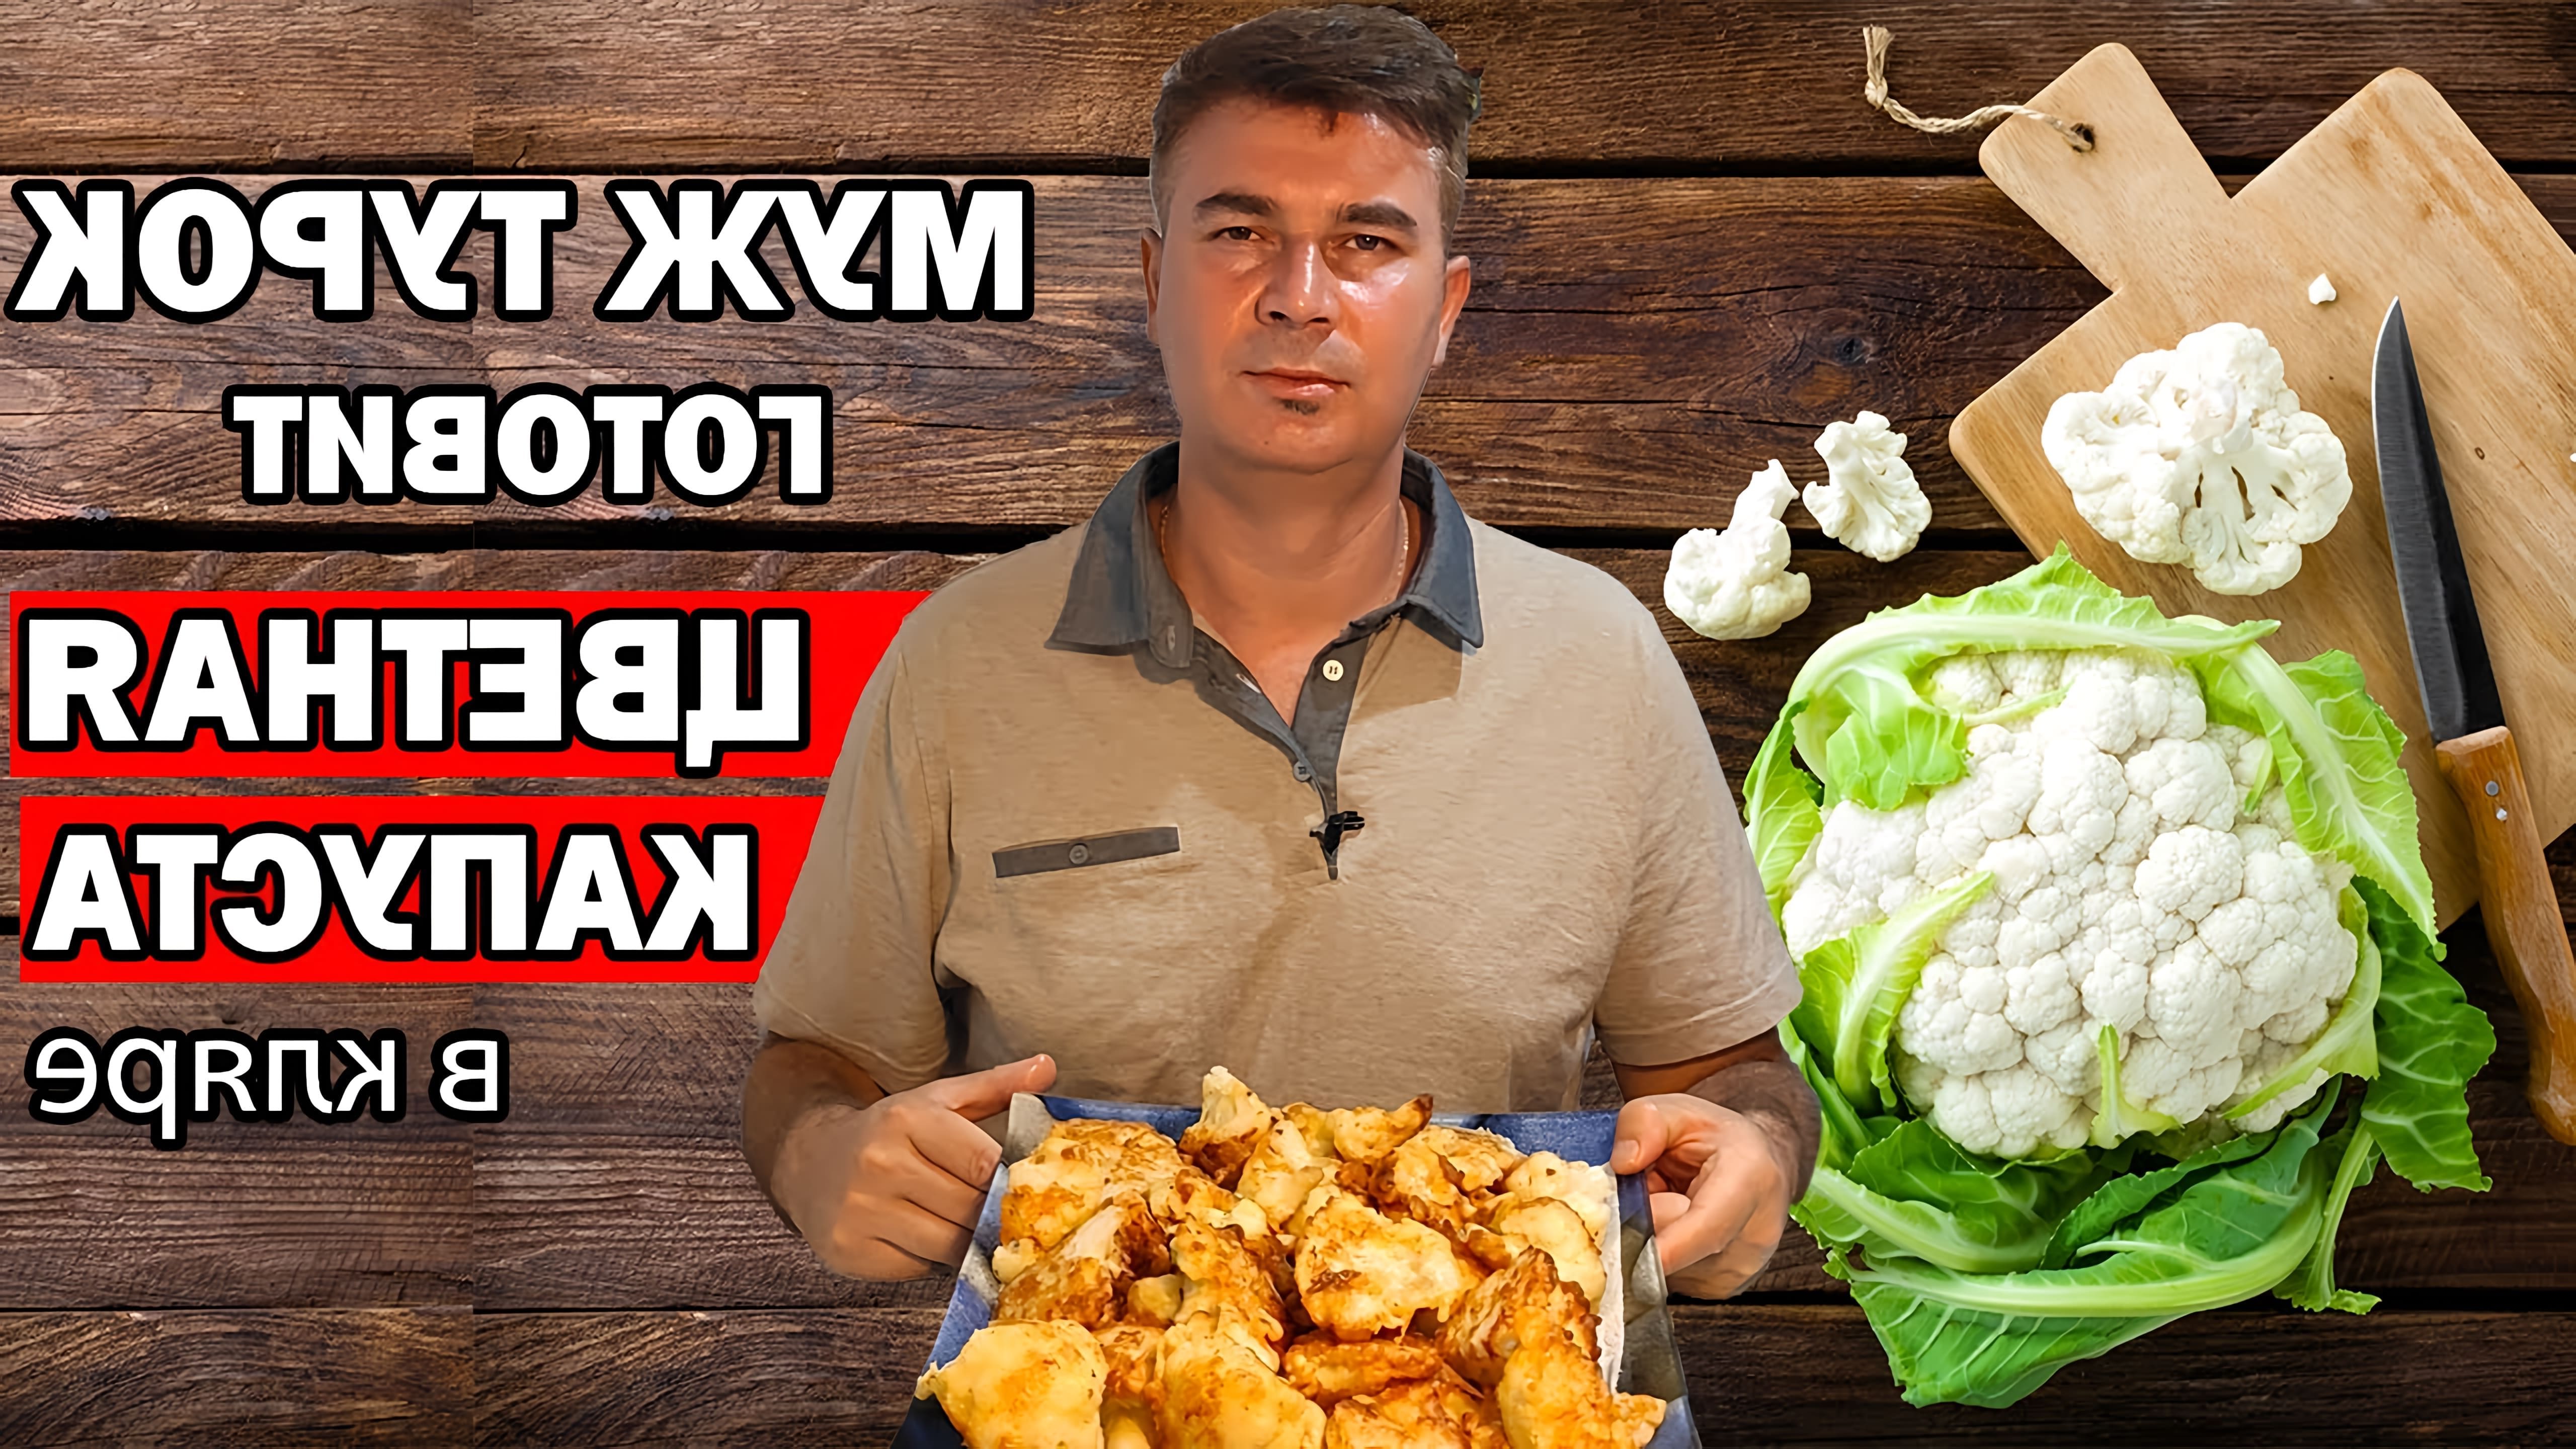 В этом видео мужчина-турок показывает, как приготовить цветную капусту в кляре на завтрак